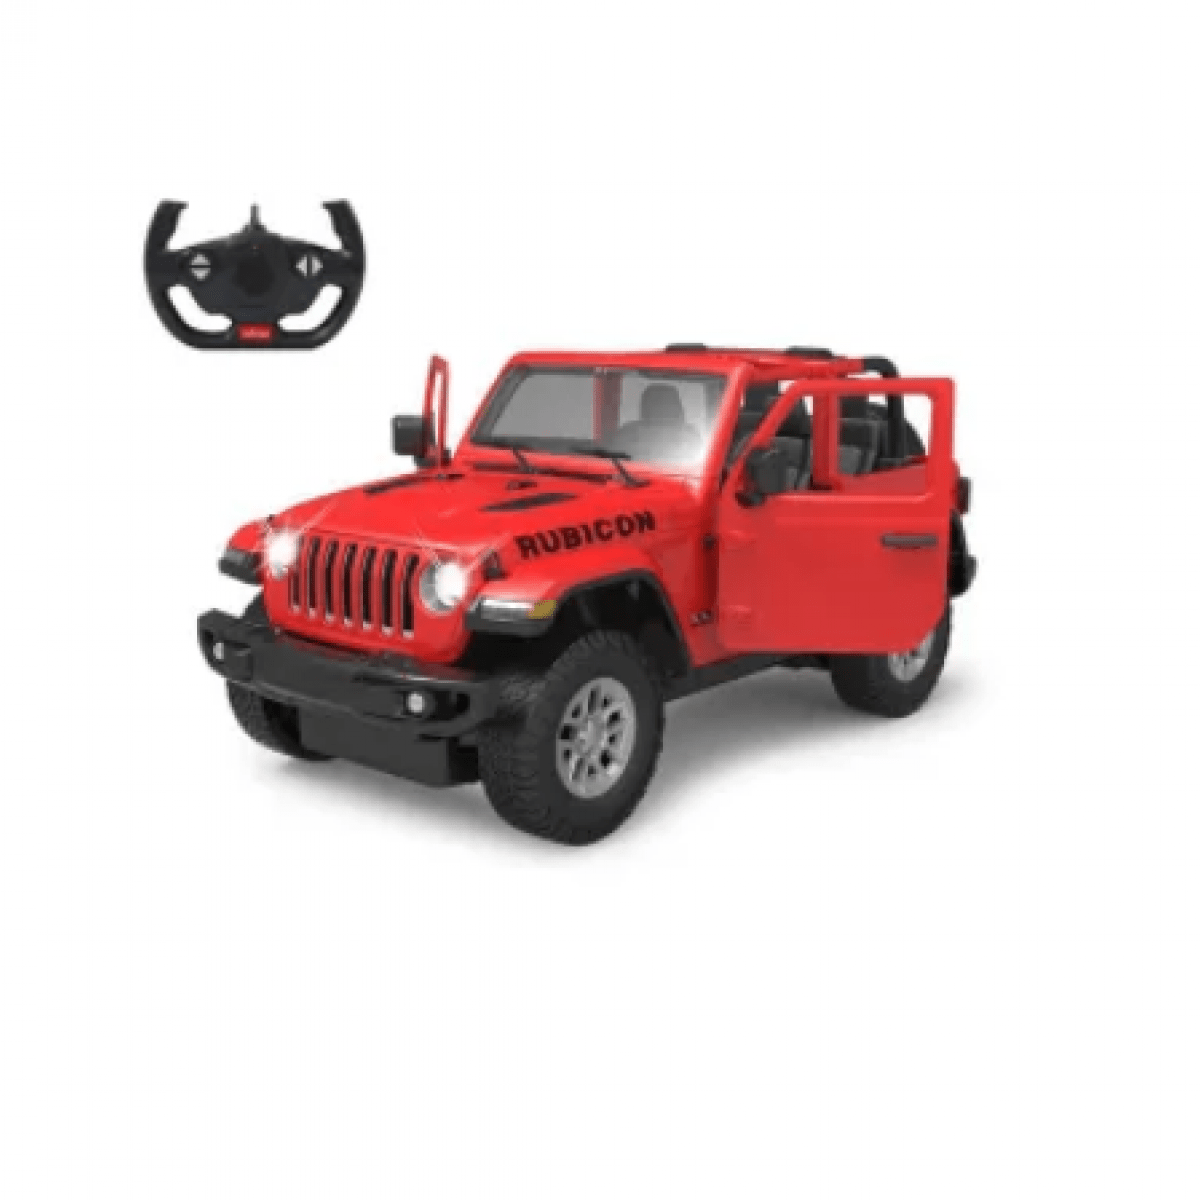 GK/JA405179 Jeep Wrangler JL 1:14 červený 24 GHz